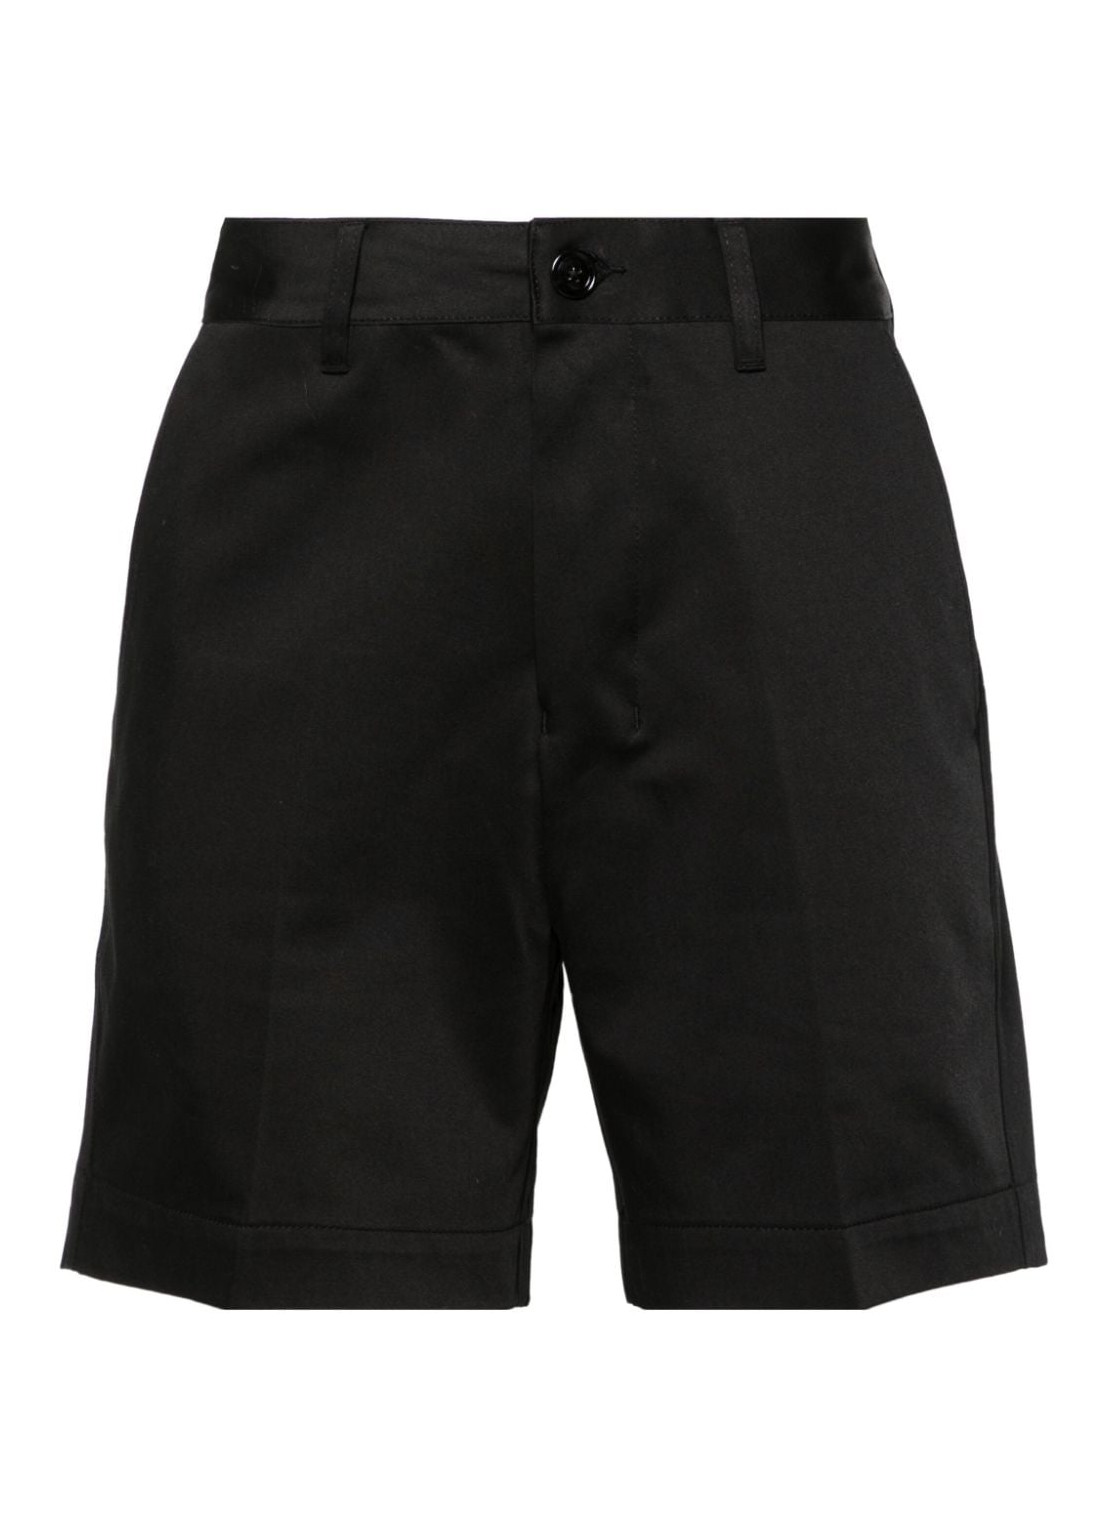 Pantalon corto ami short pant manchino shorts - hso004co0009 001 talla negro
 